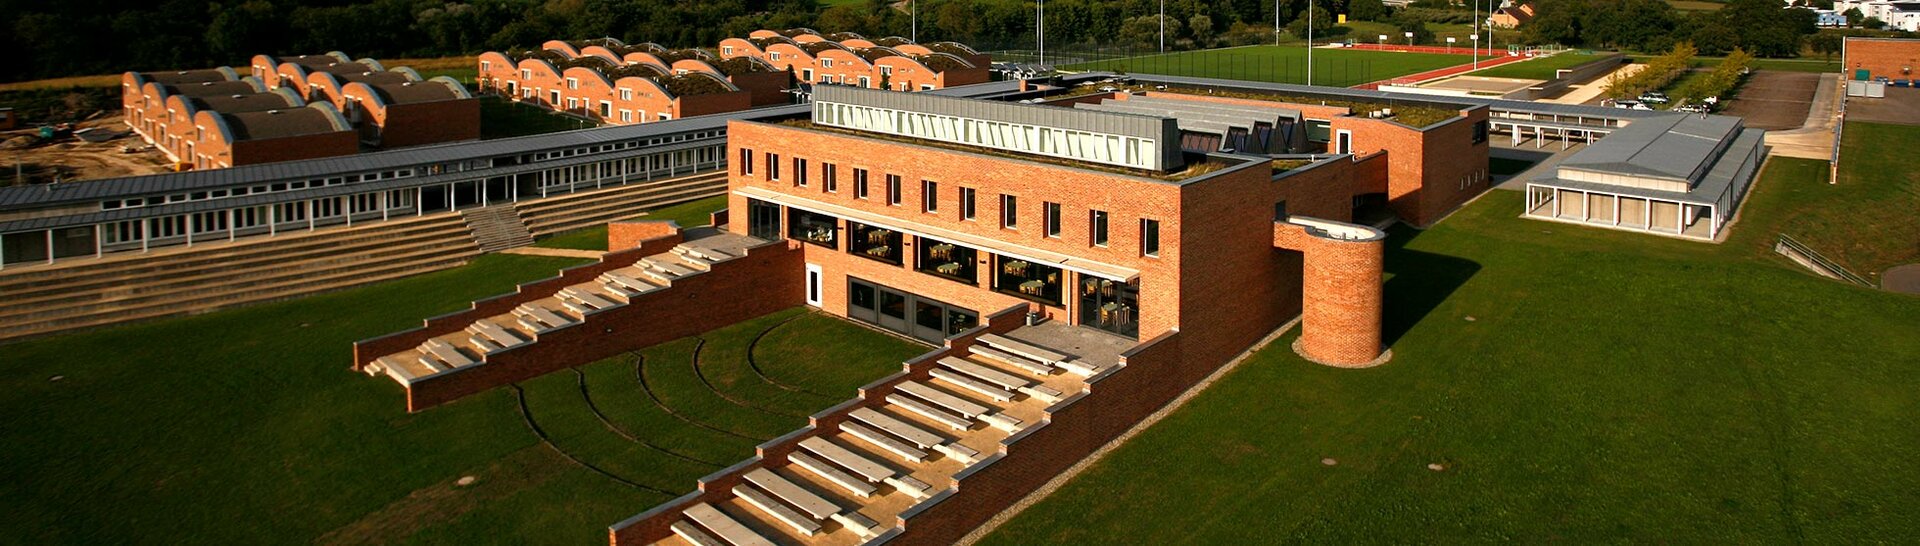 Blick über unseren Oberstufenstandort Campus Härlen in Überlingen am Bodensee